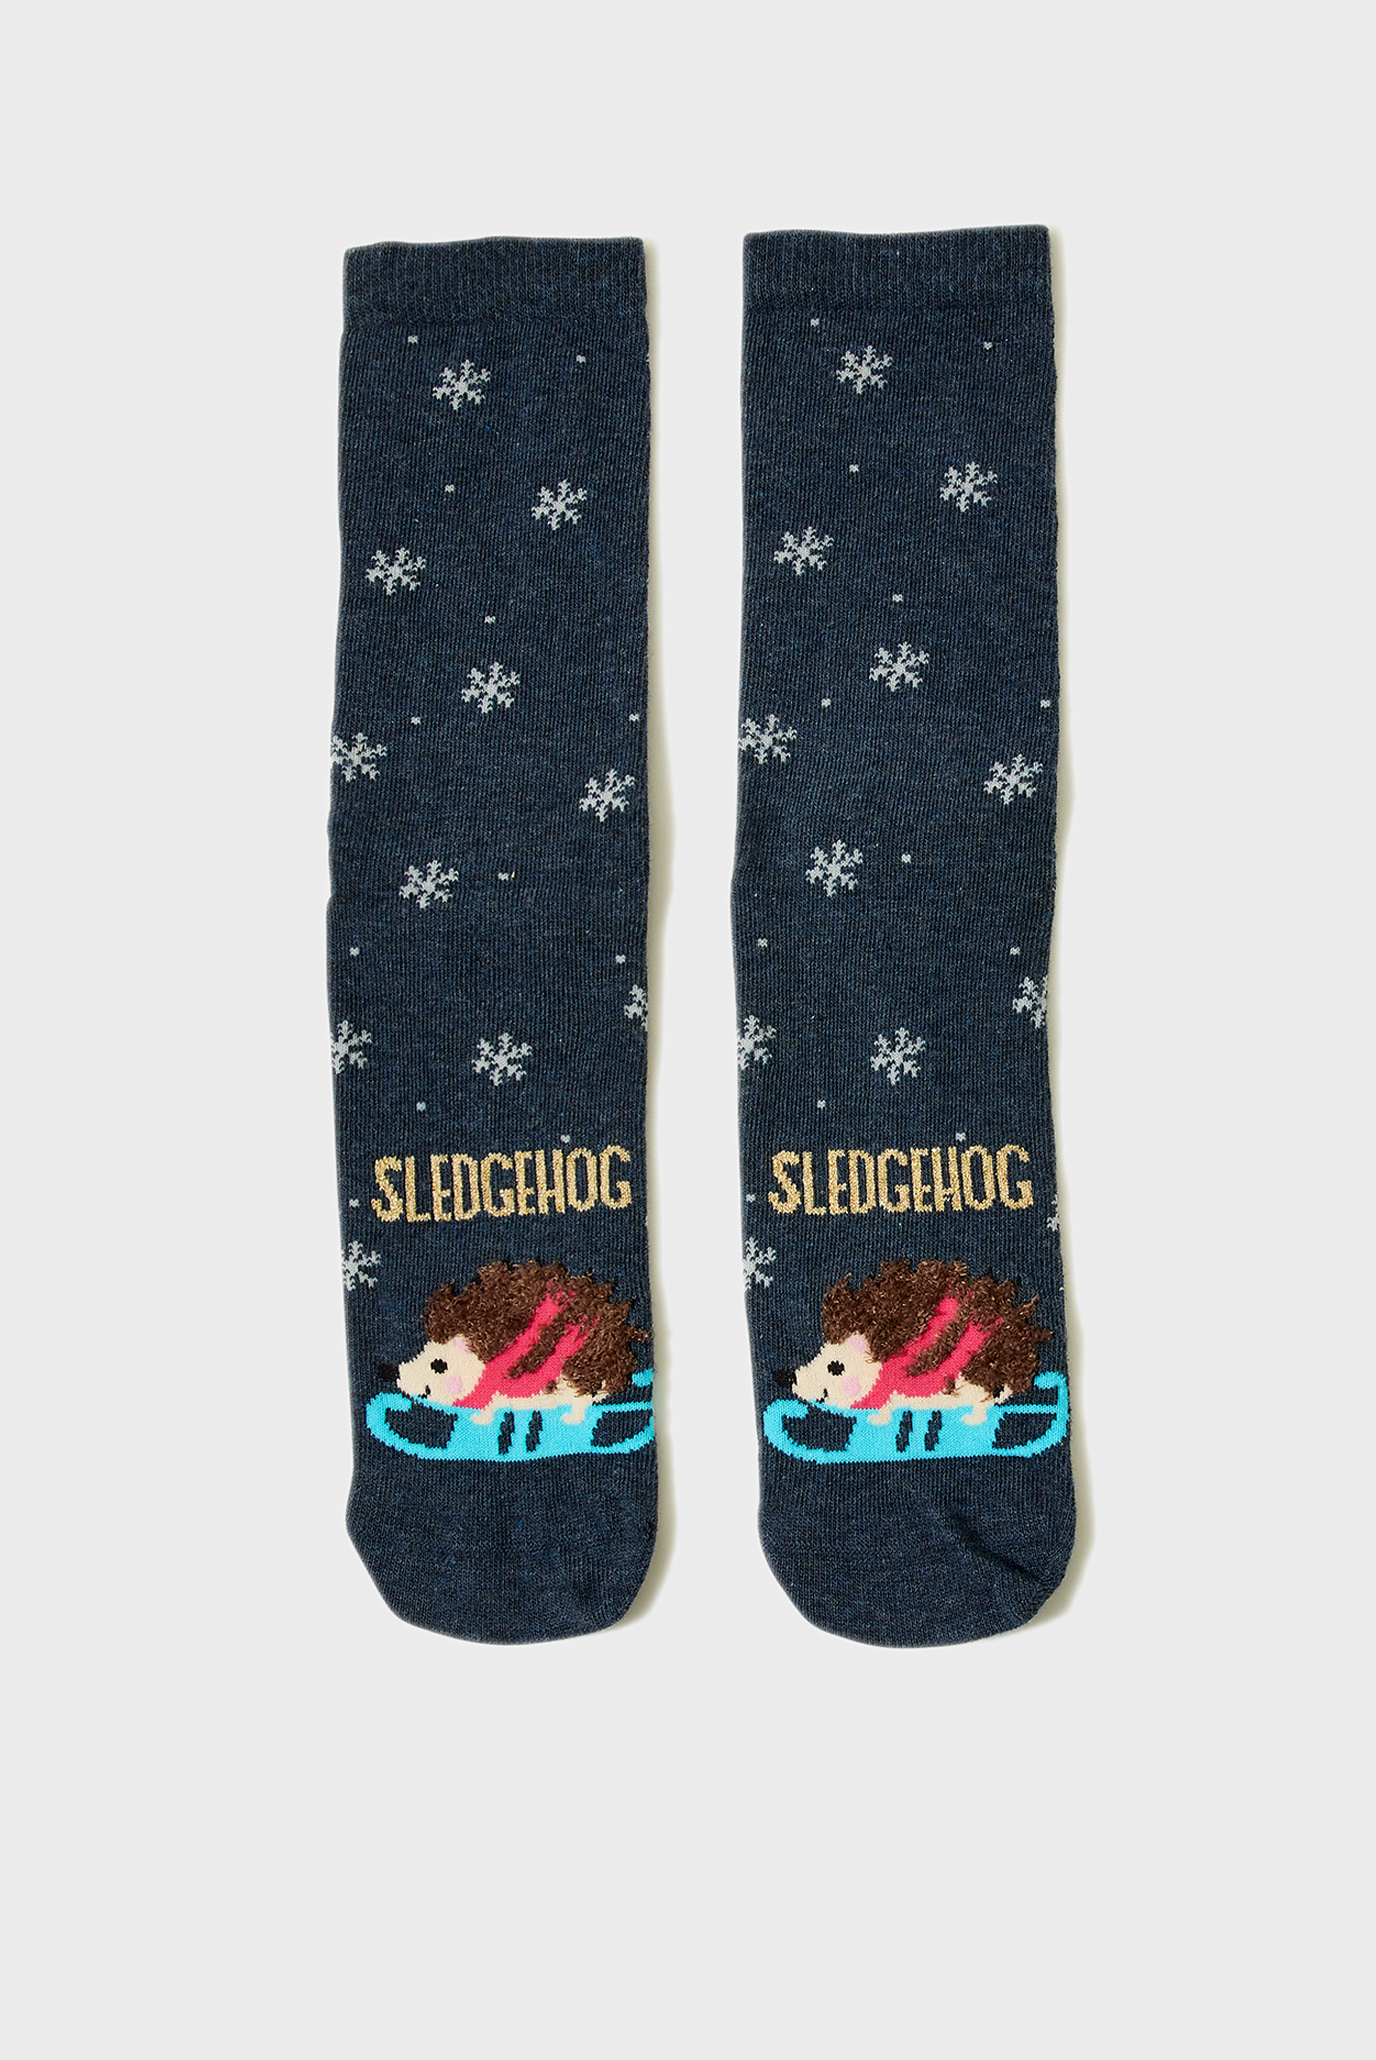 Жіночі темно-сині шкарпетки SNOWFLAKE SLEDGEHOG 1